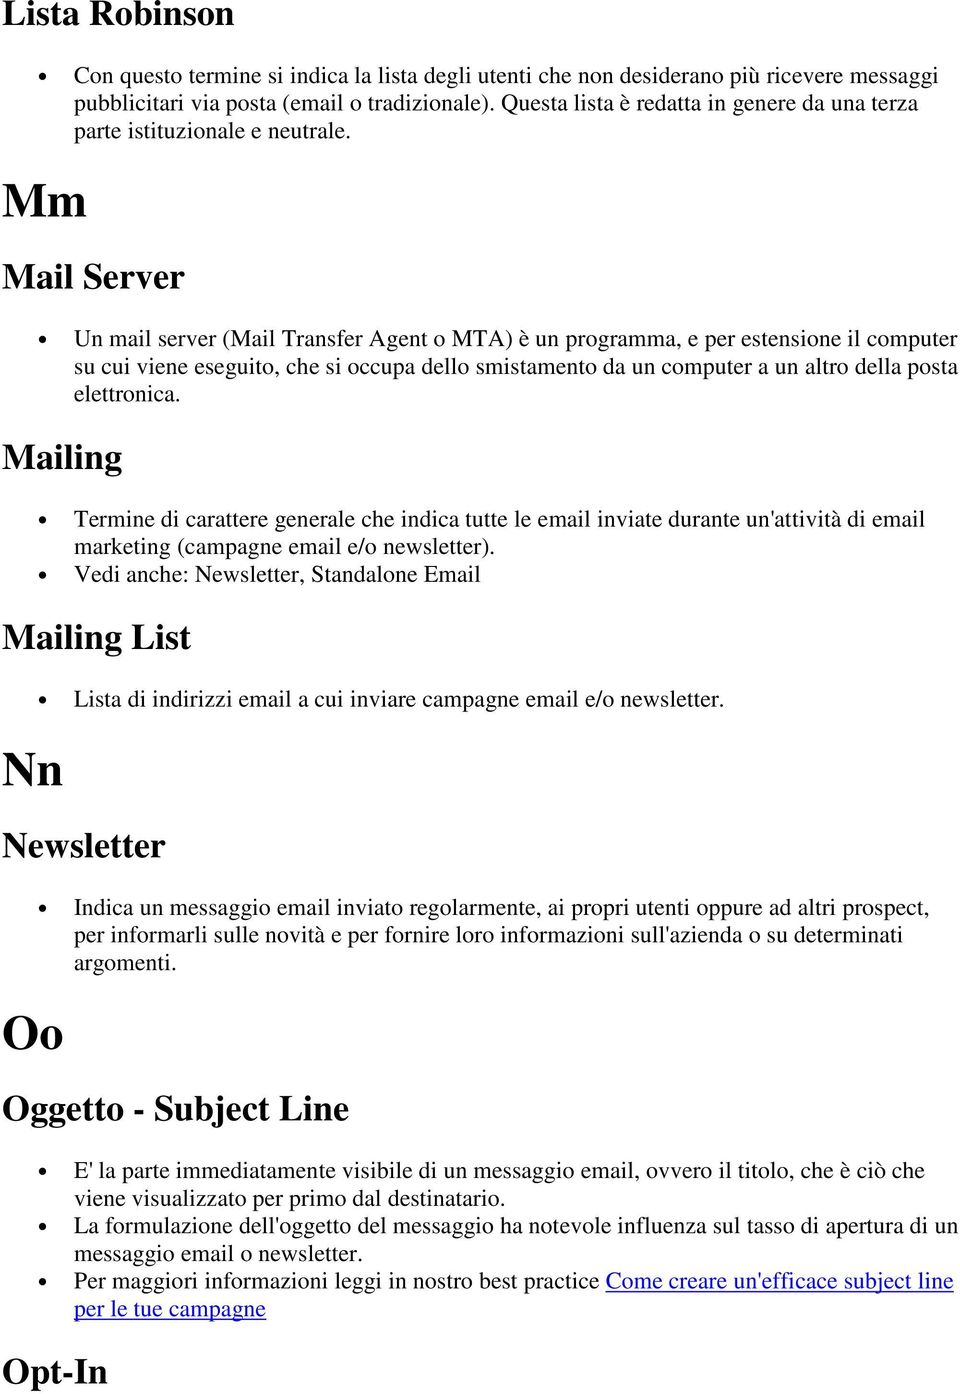 Mm Mail Server Un mail server (Mail Transfer Agent o MTA) è un programma, e per estensione il computer su cui viene eseguito, che si occupa dello smistamento da un computer a un altro della posta